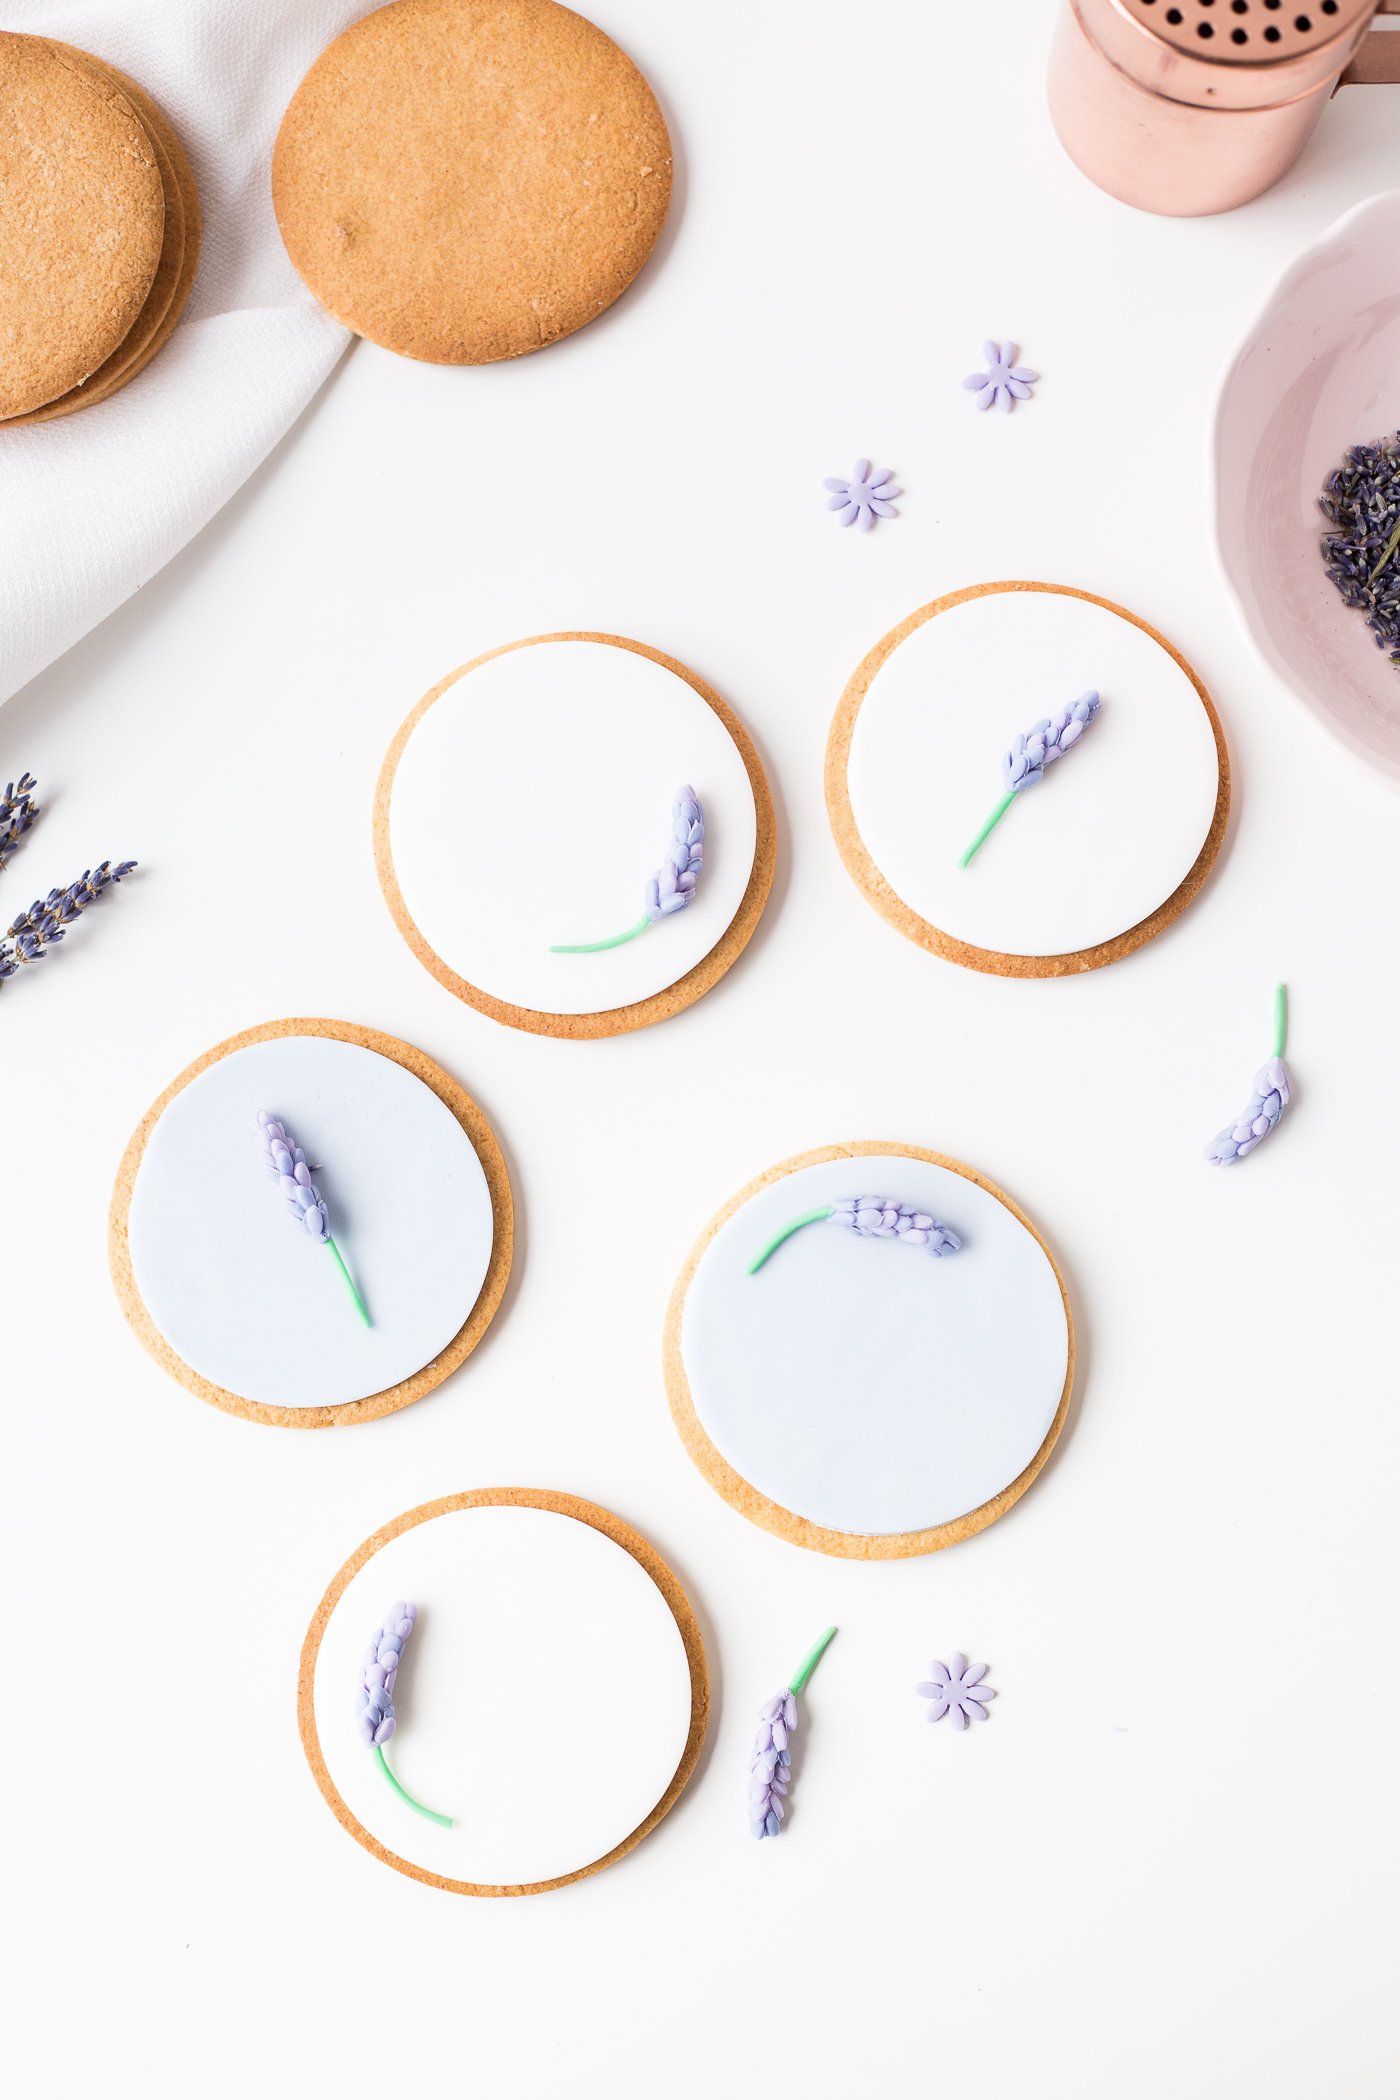 DIY Sugar Lavender Bloom Cookie Toppers | @fallfordiy-33